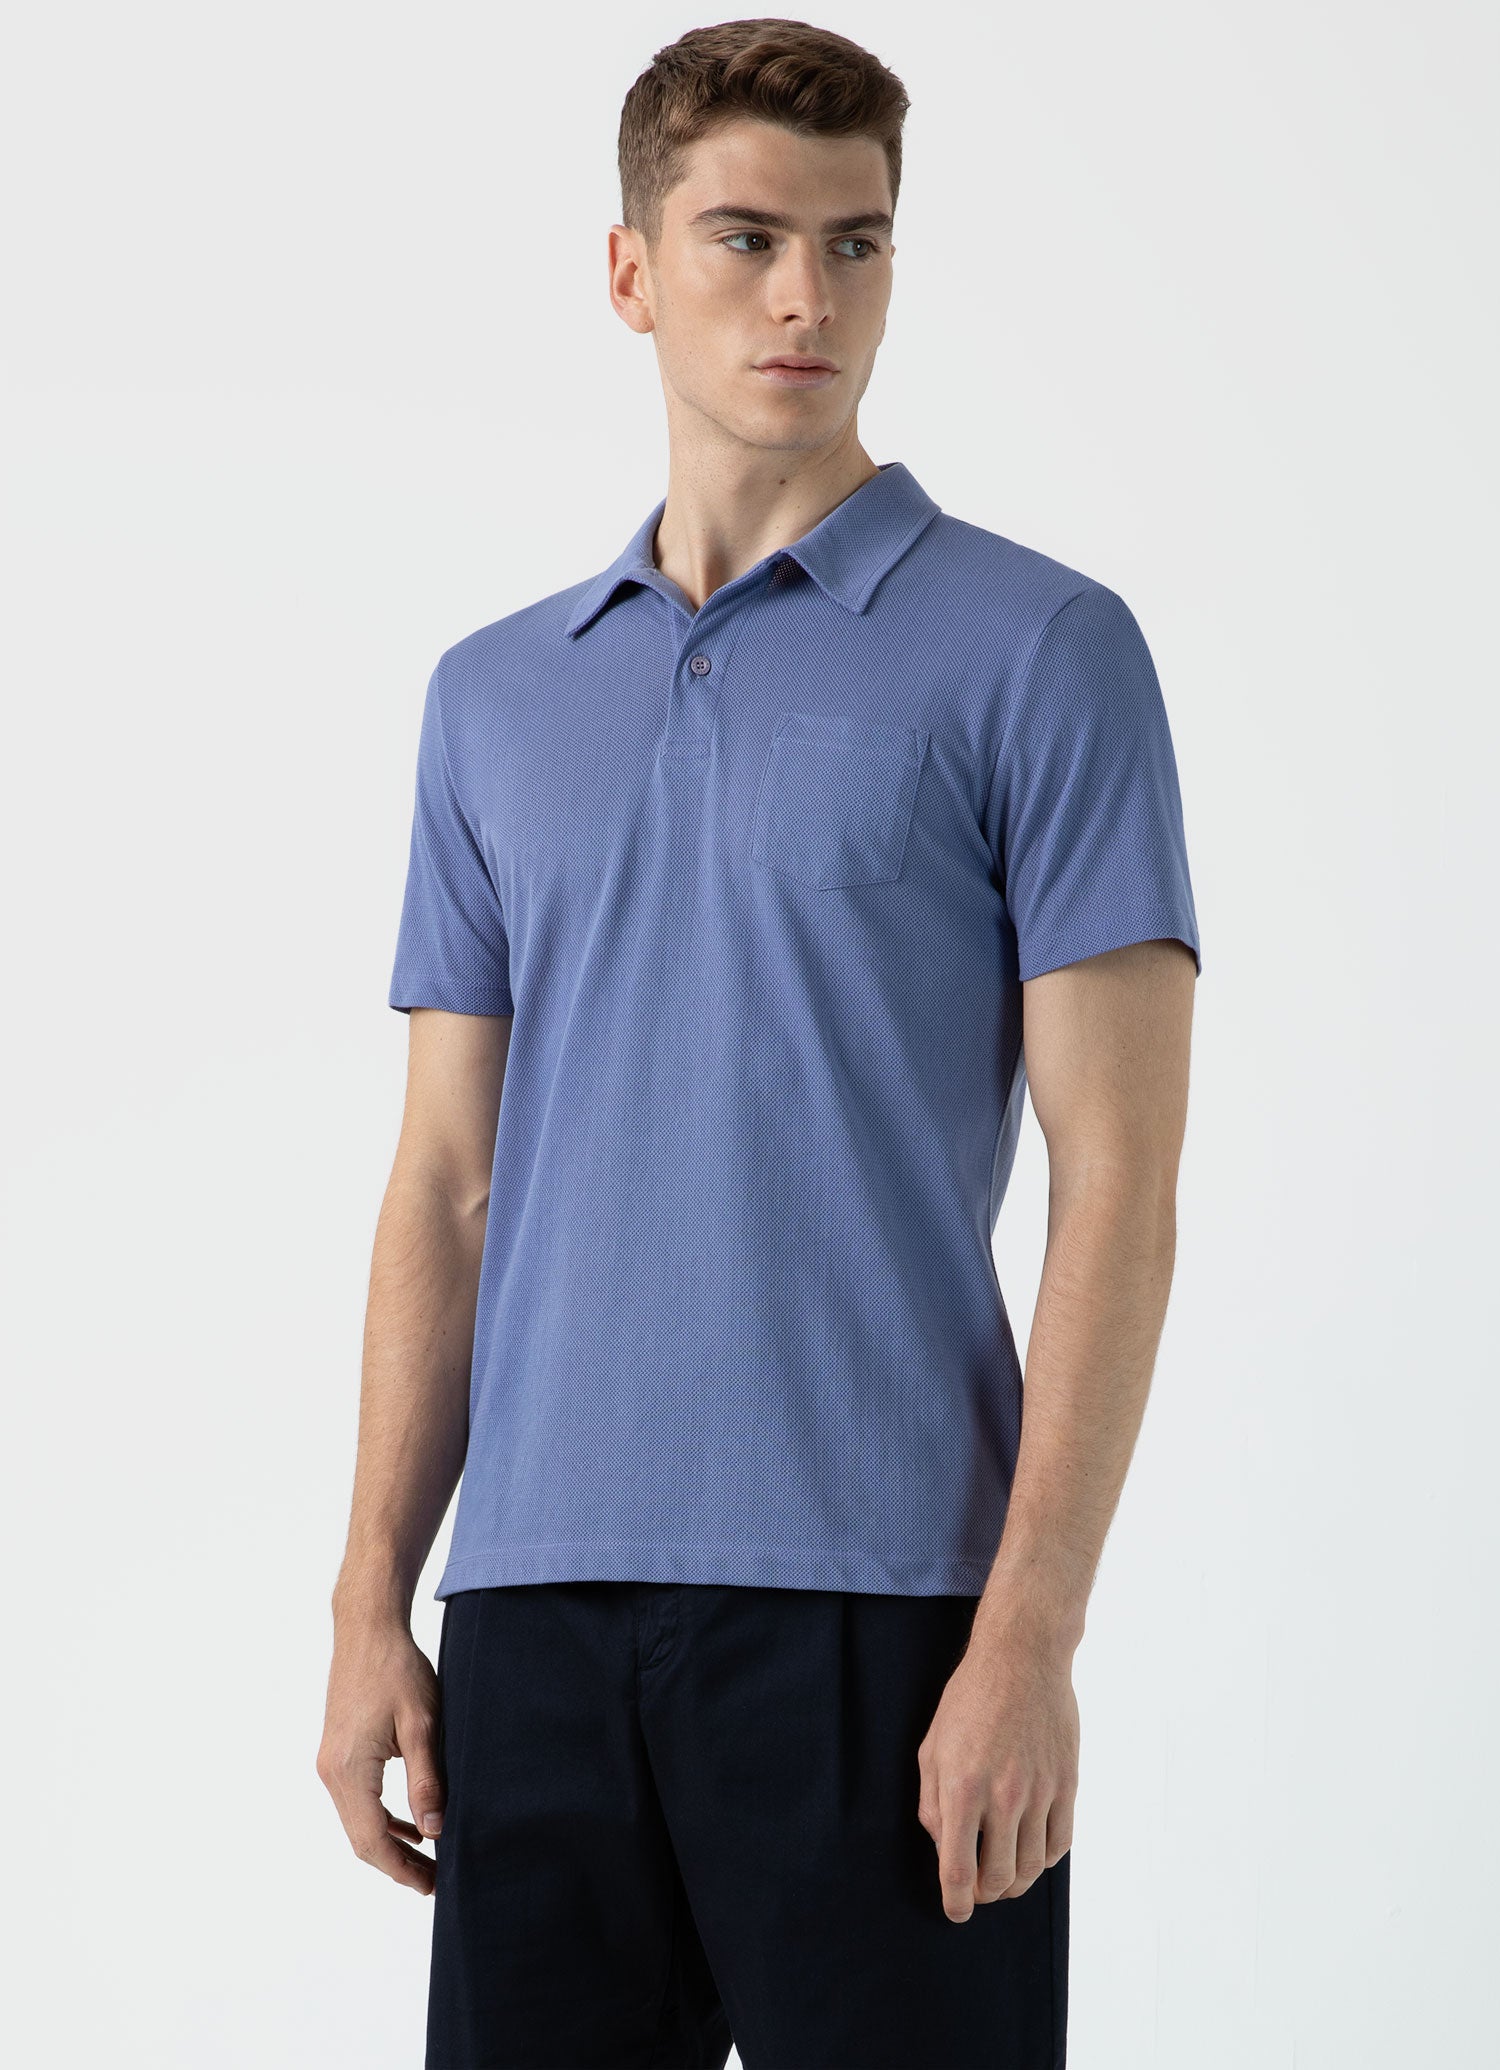 Men's Riviera Polo Shirt in Grape